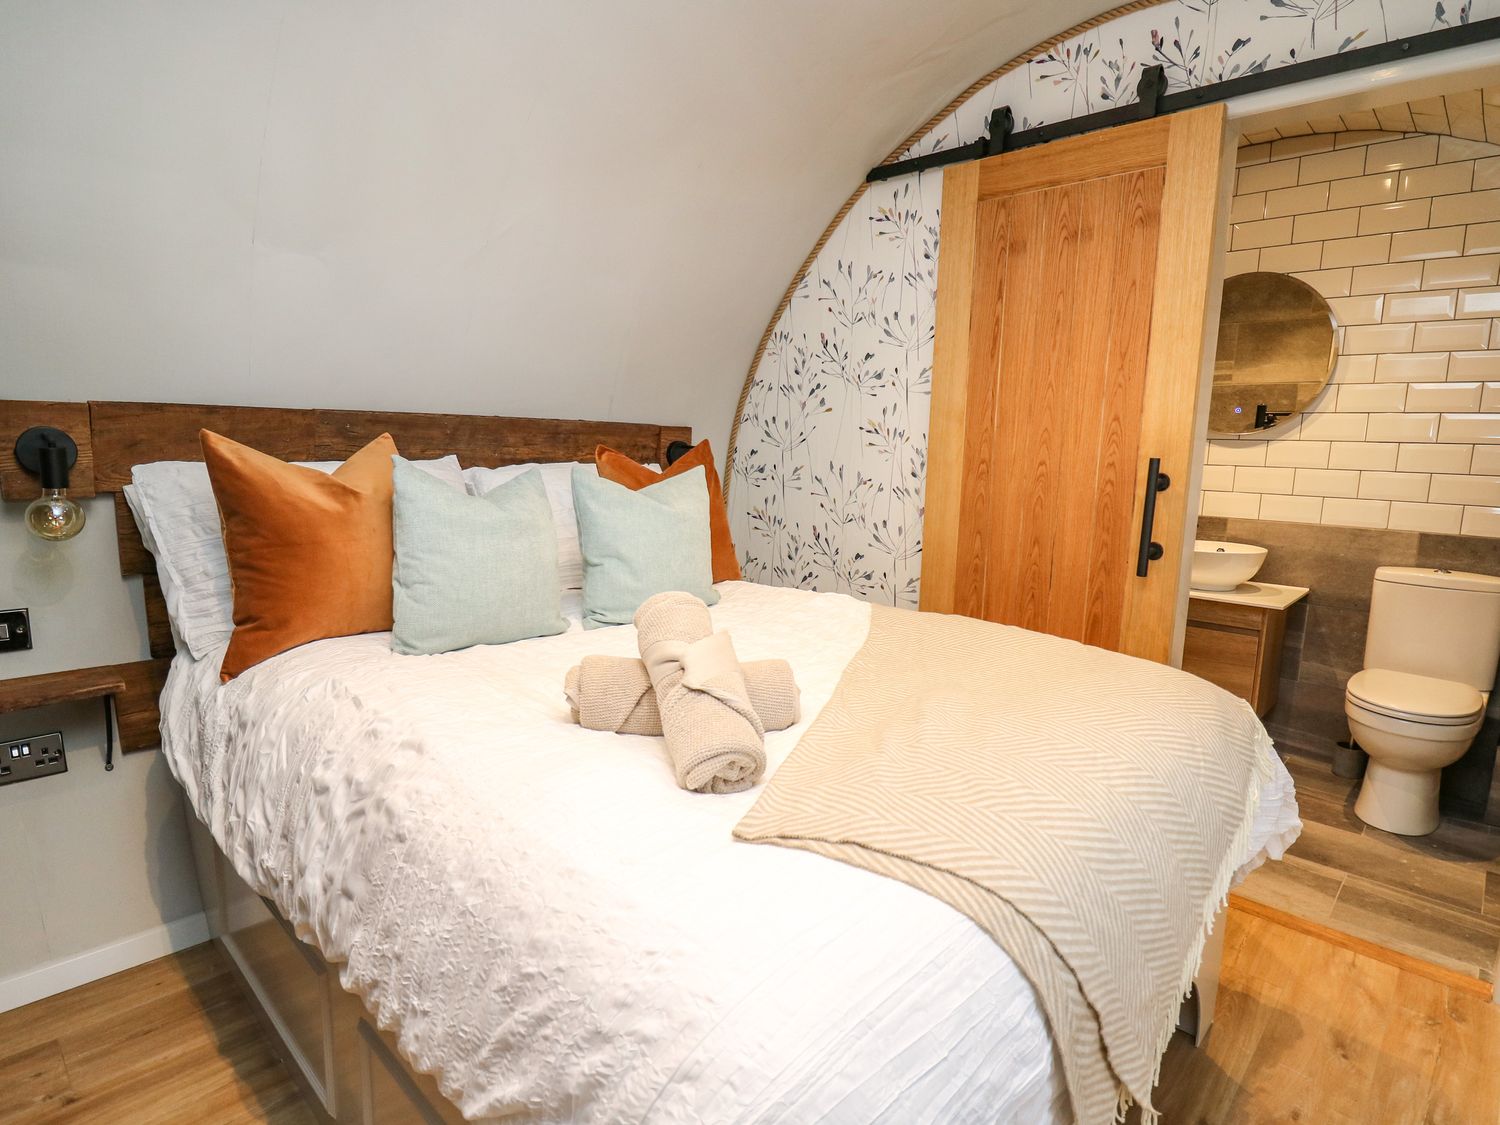 Hobbit Home 2 bed, slps 4 - name TBC, Llanfair Caereinion